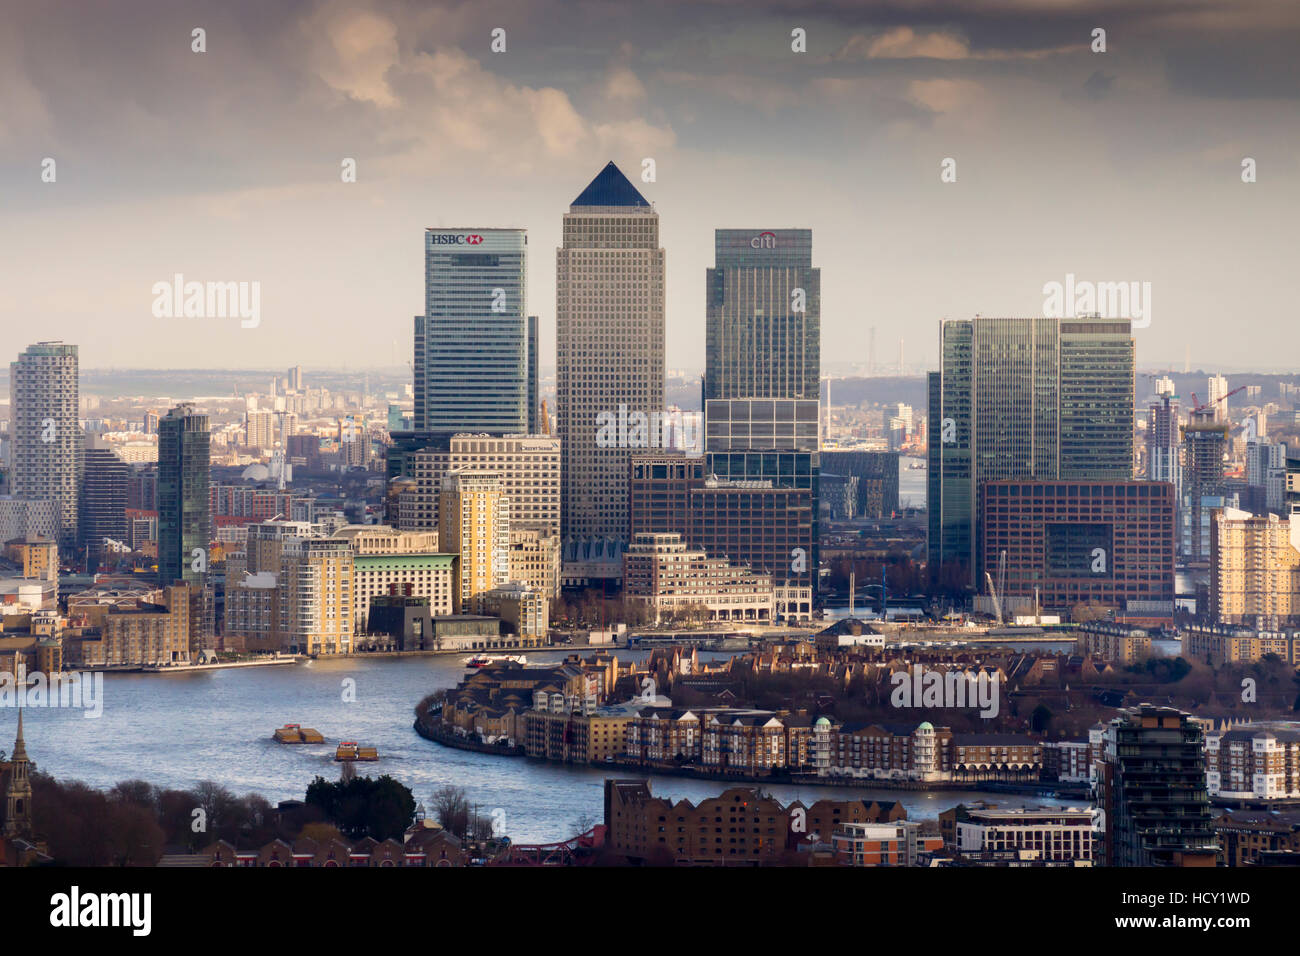 Moody vue sur Canary Wharf, les Docklands, à partir de ci-dessus, London, UK Banque D'Images